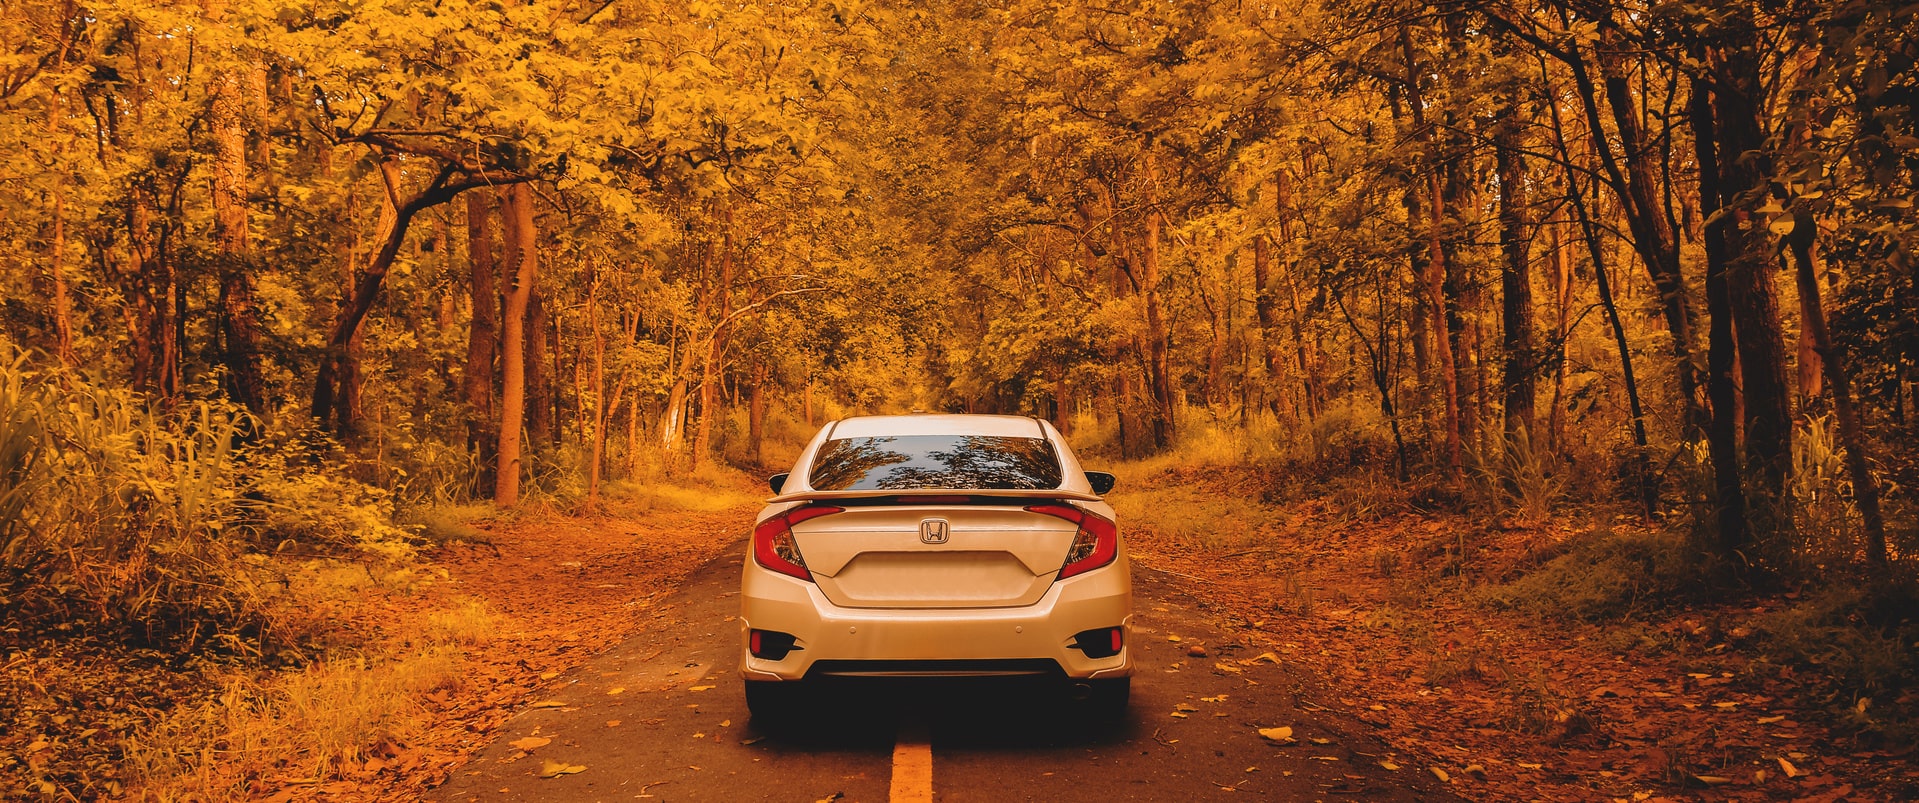 L'automne à l'horizon : comment préparer son véhicule et sa conduite ? - Blog  Reezocar